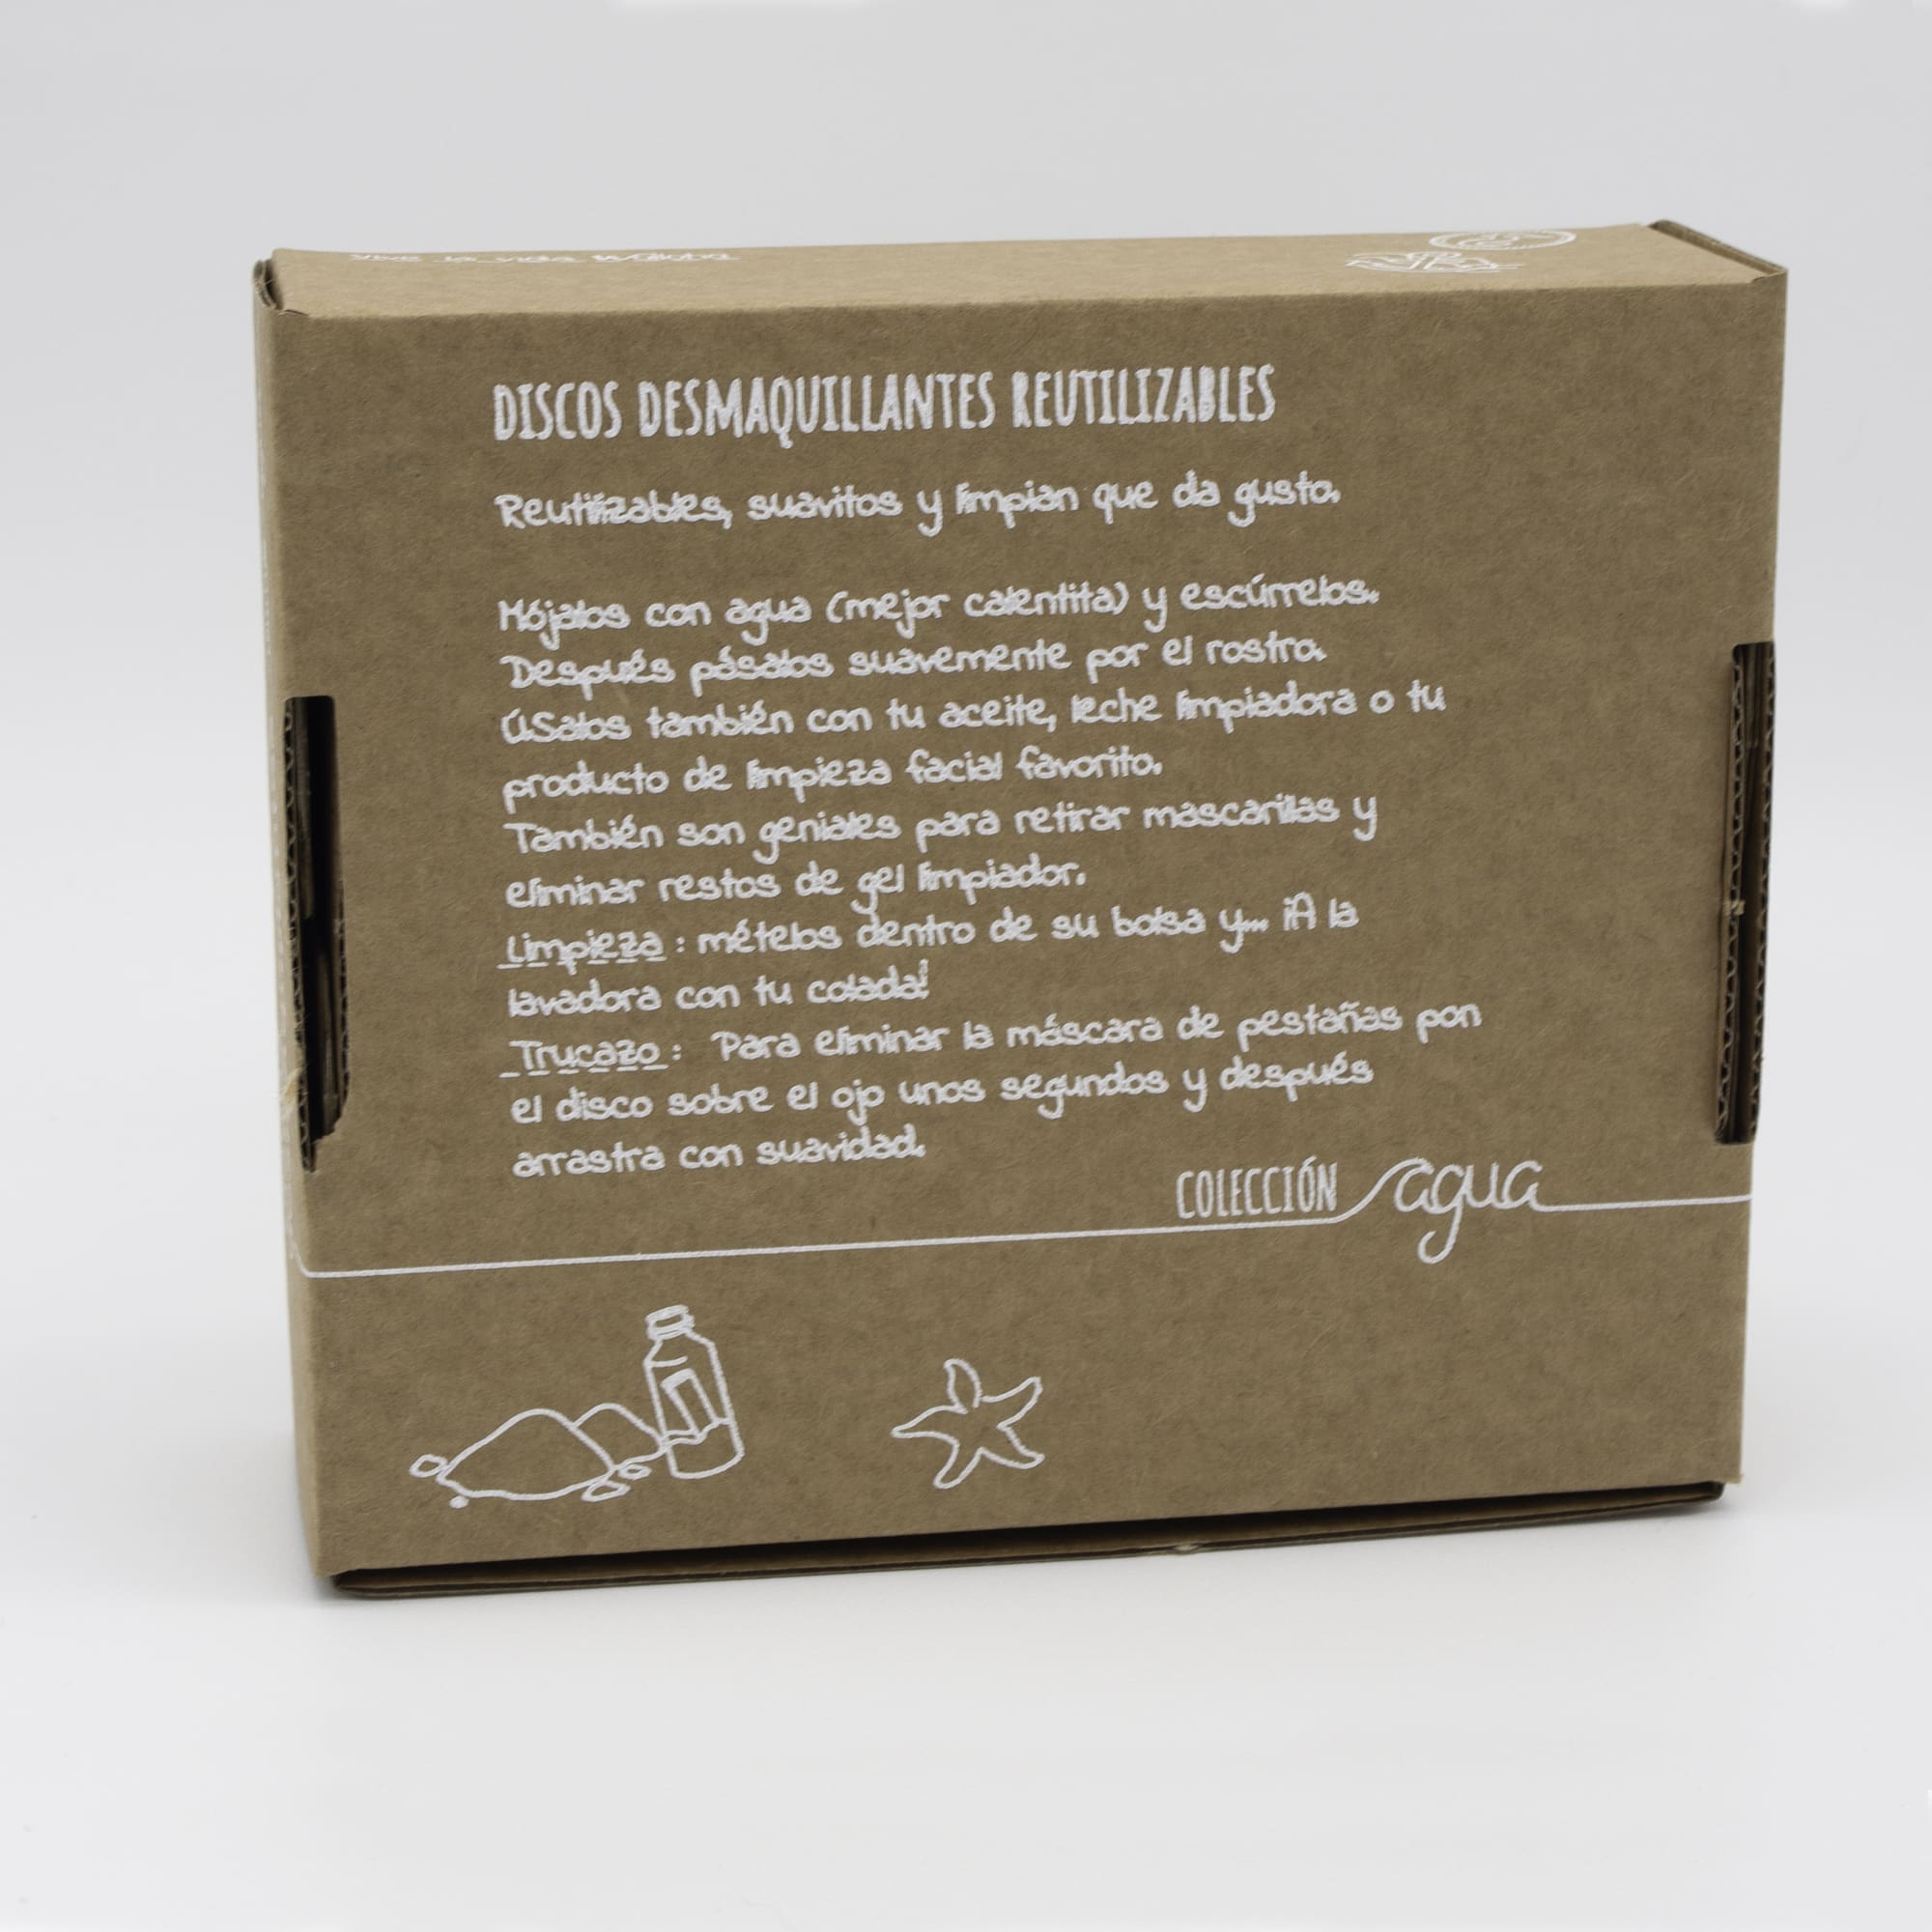 Algodones desmaquillantes reutilizables en caja Turquesa, 7 unidades